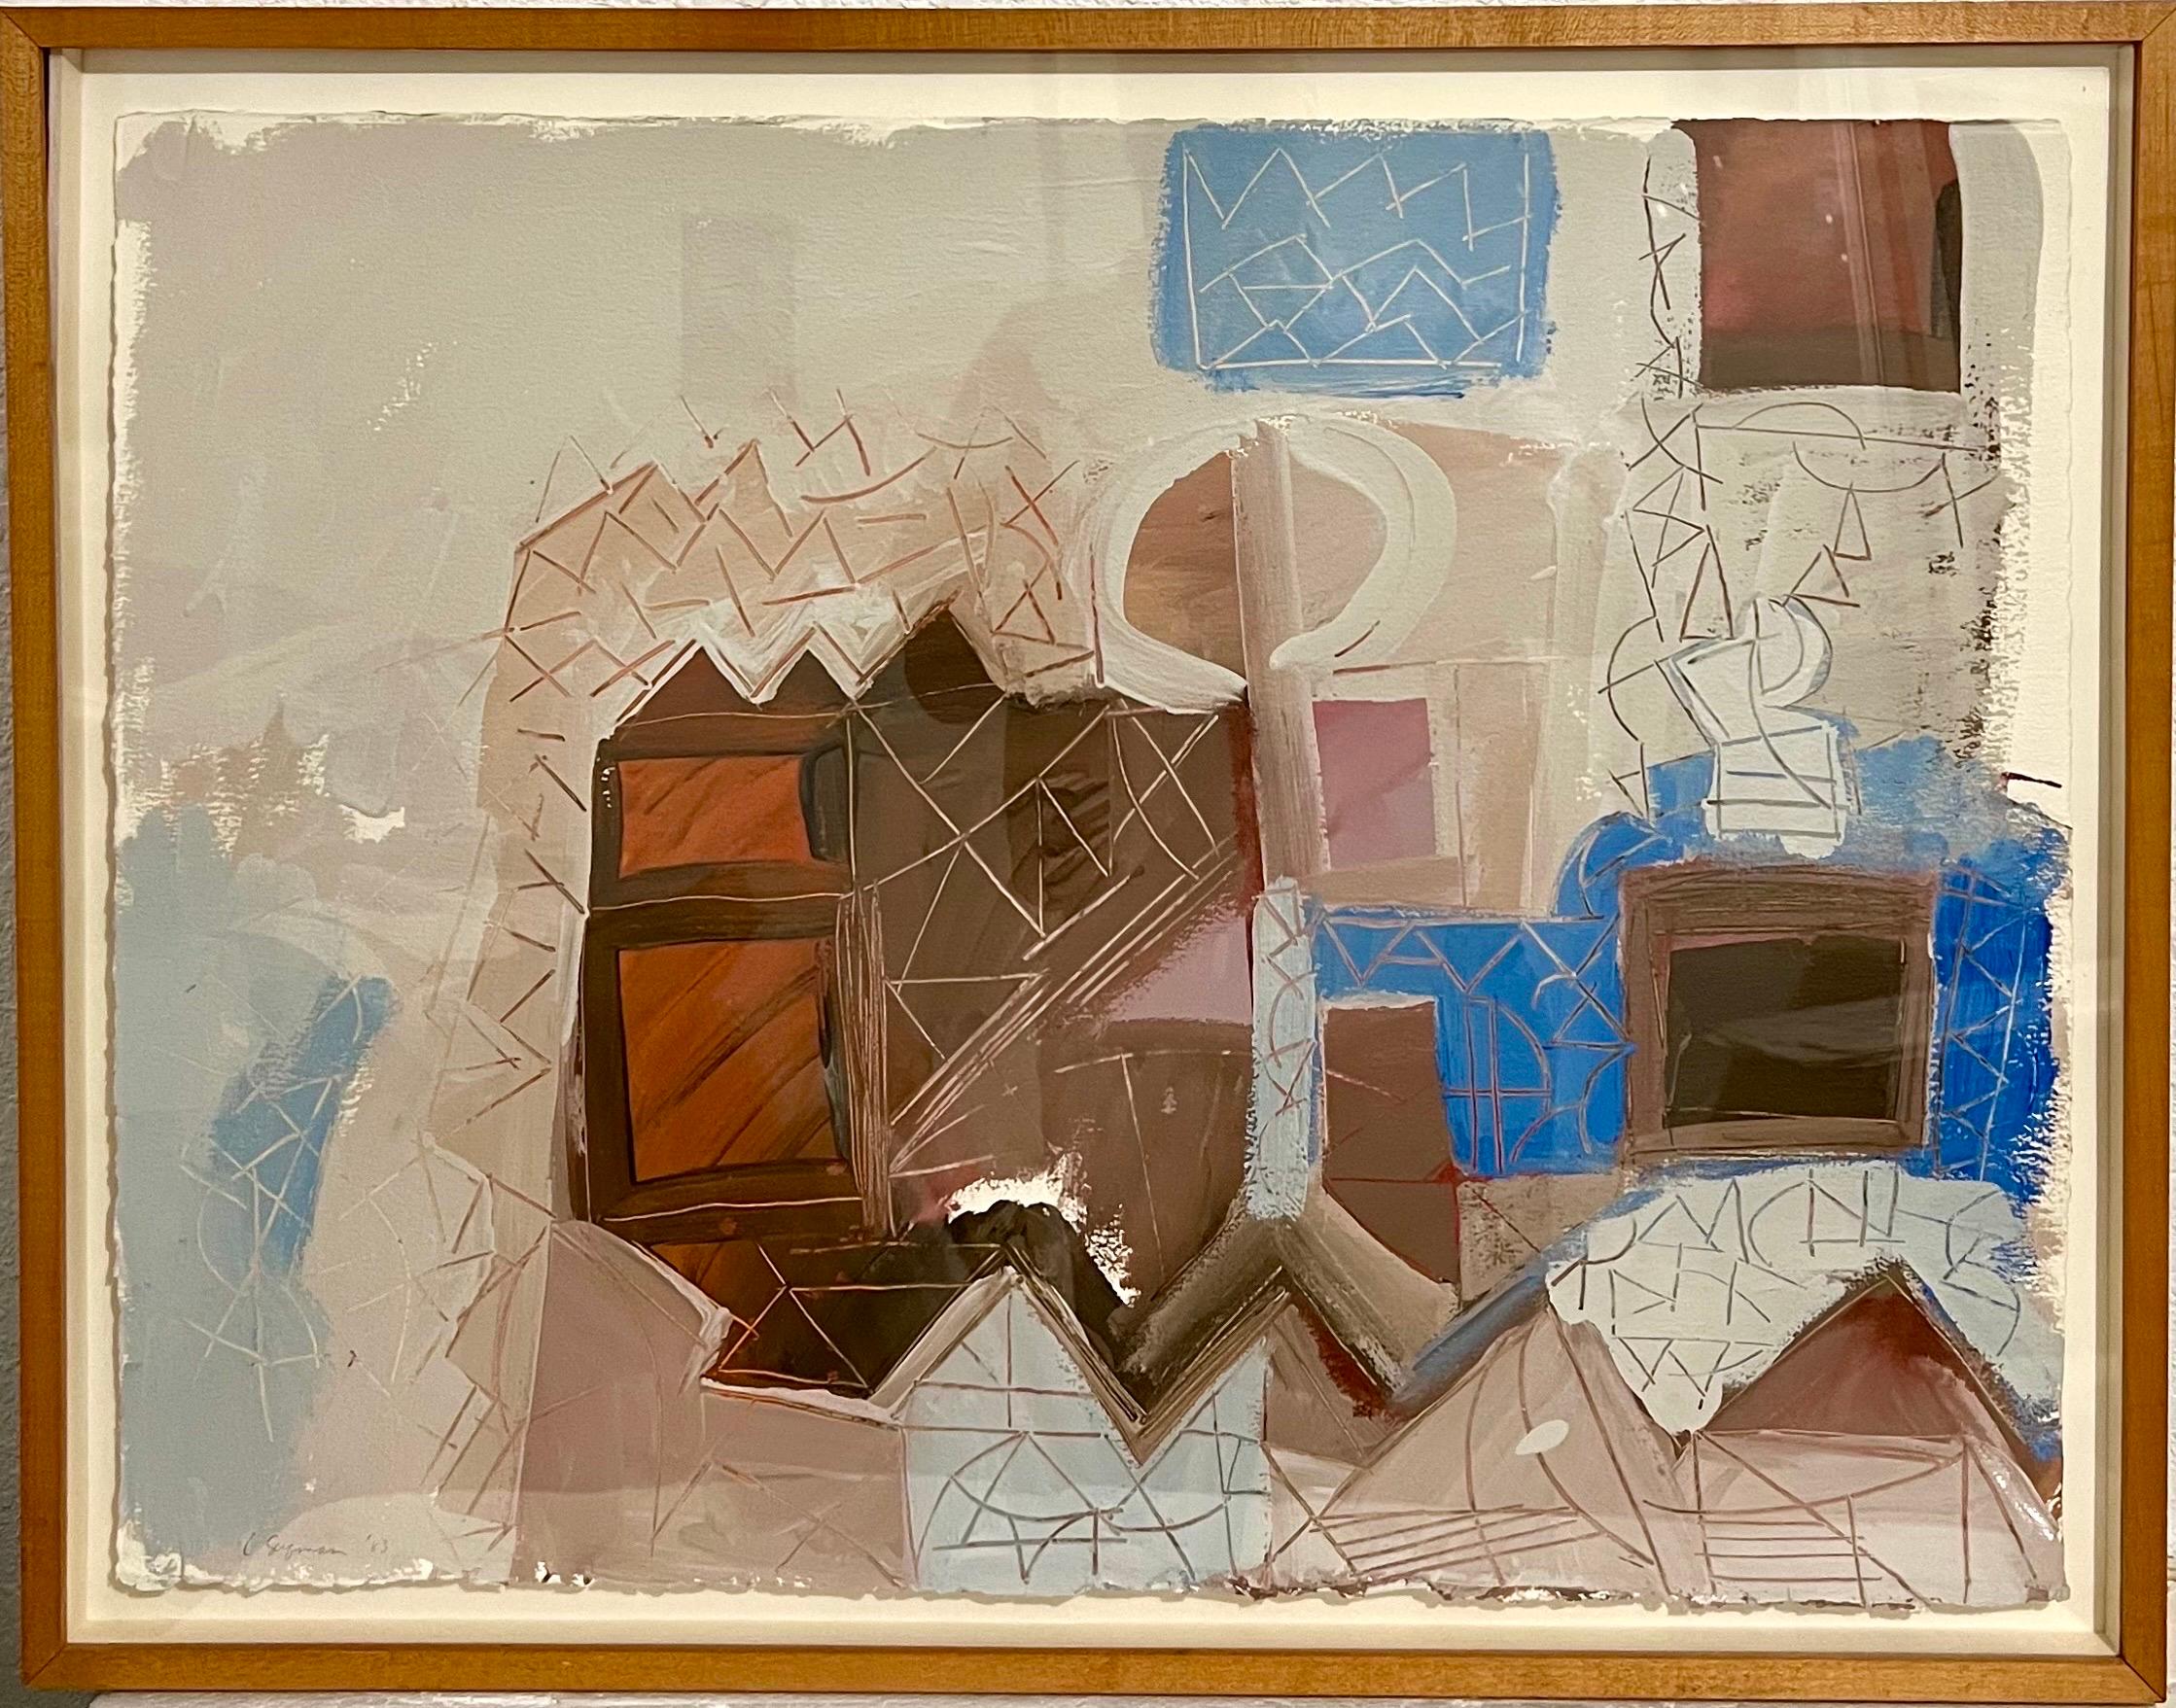 Lynne Golob Gelfman, Américaine (1944-2020)
Composition abstraite en couleurs
Peinture acrylique sur papier
1983
Signé à la main et daté au recto
23" X 29", le cadre mesure 26" X 33".
Provenance : Collection Jan Van der MARCK, prêtée au Detroit